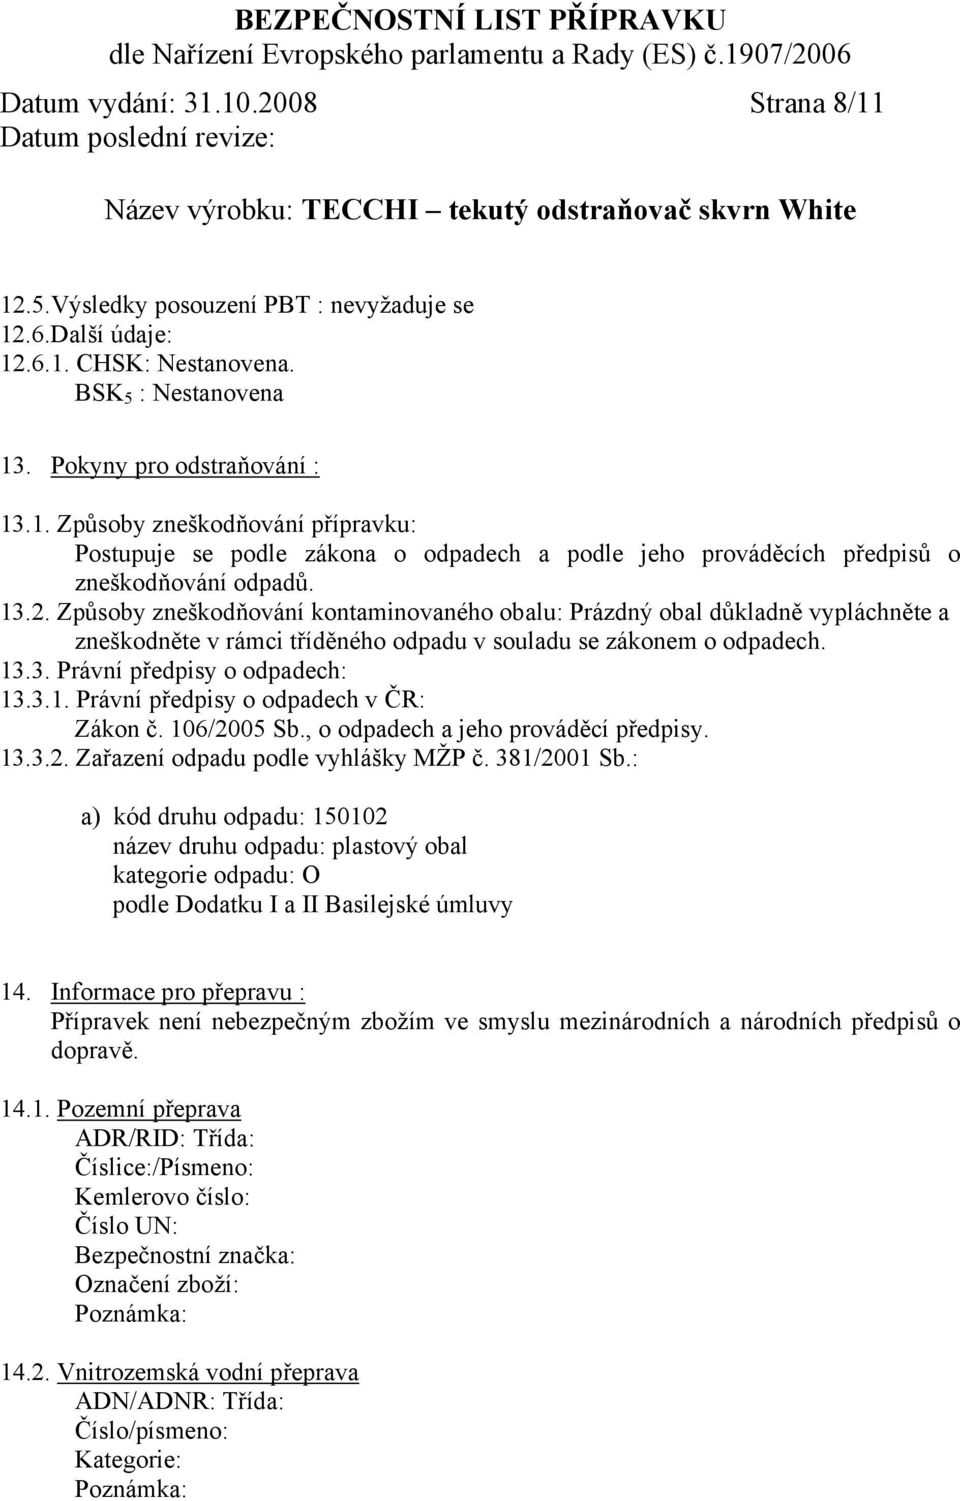 106/2005 Sb., o odpadech a jeho prováděcí předpisy. 13.3.2. Zařazení odpadu podle vyhlášky MŽP č. 381/2001 Sb.